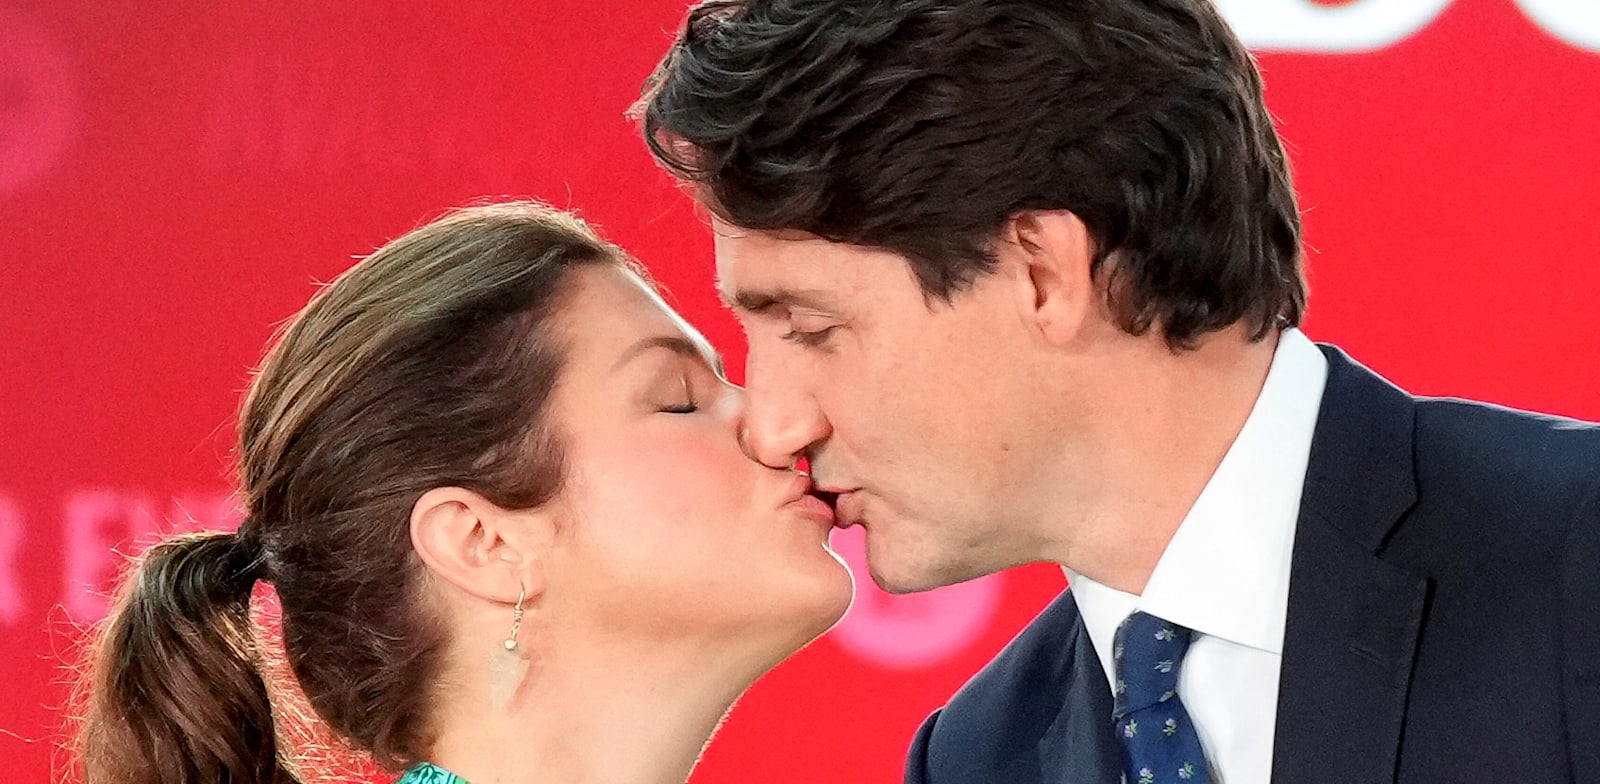 ראש ממשלת קנדה ג'סטין טרודו וזוגתו, סופי גרגואר, ביום שלישי לאחר שנבחר מחדש לקדנציה שלישית בתפקיד / צילום: Reuters, Carlos osorio